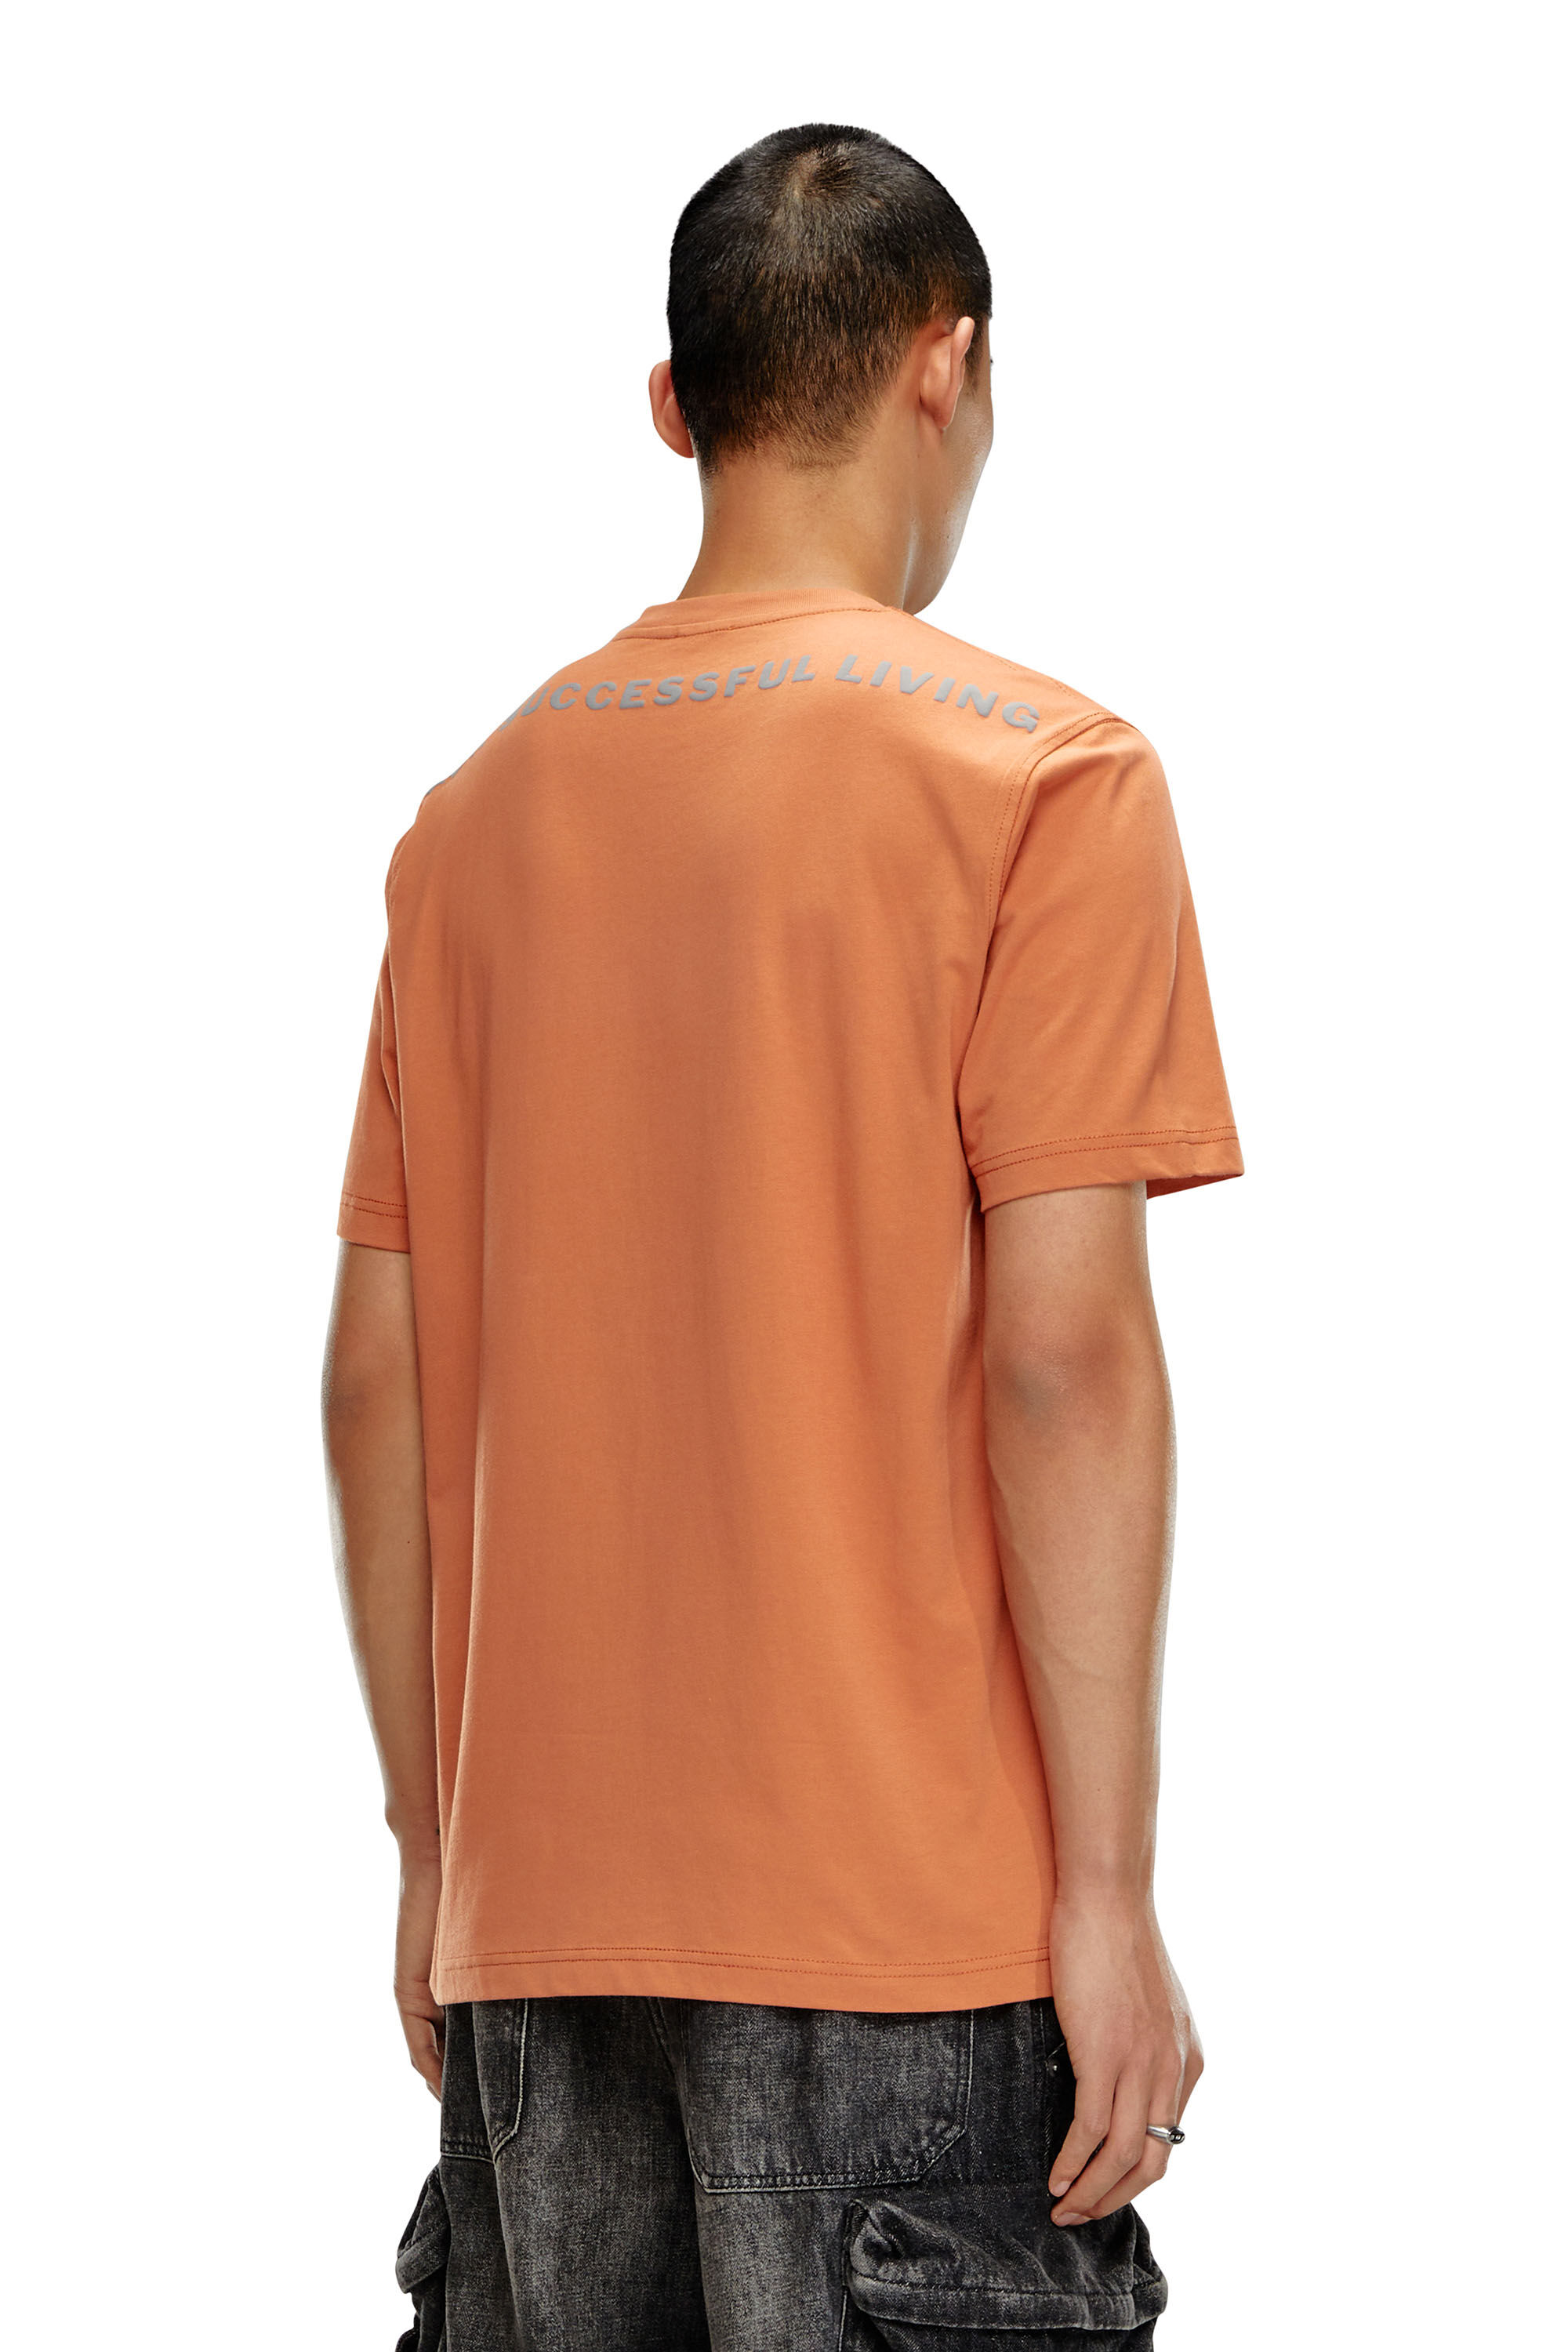 Diesel - T-JUST-N16, Herren T-Shirt mit Zebra-Camouflage-Motiv in Orange - Image 3